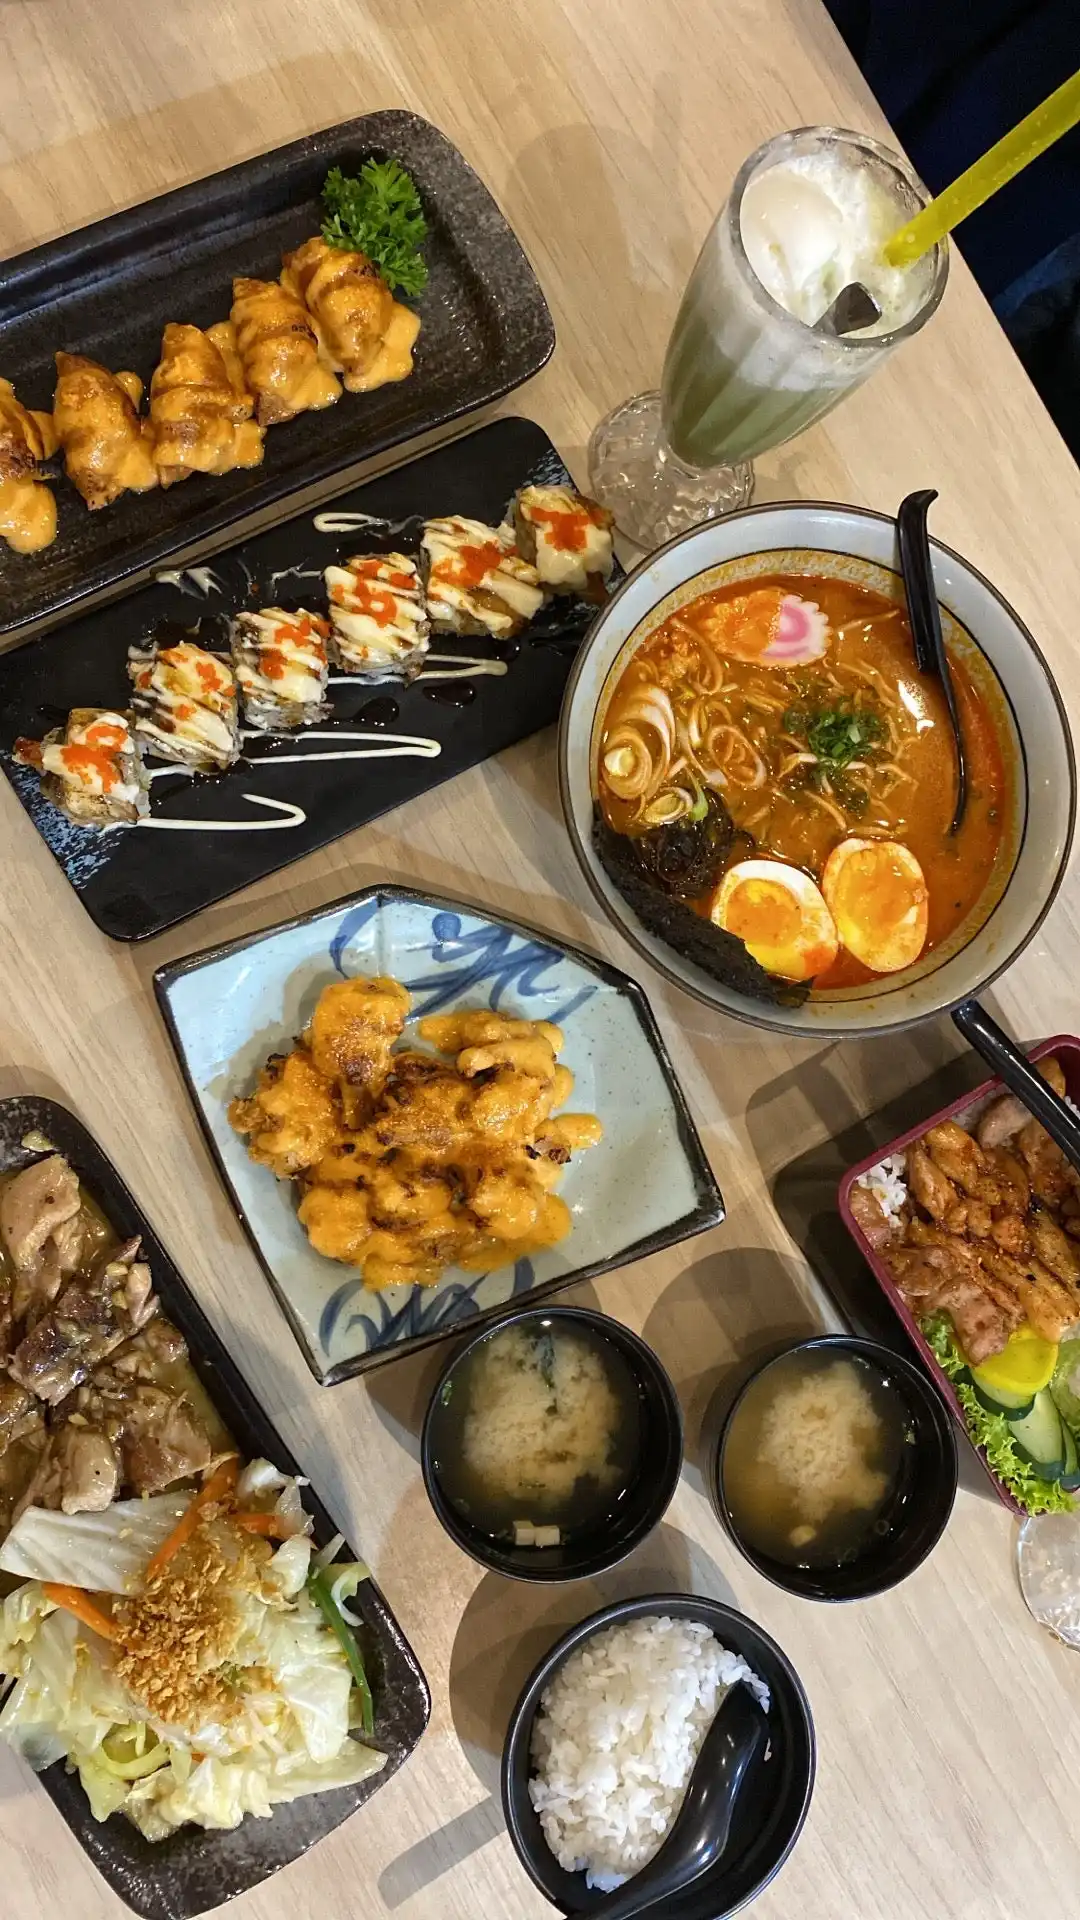 Nippon Sushi